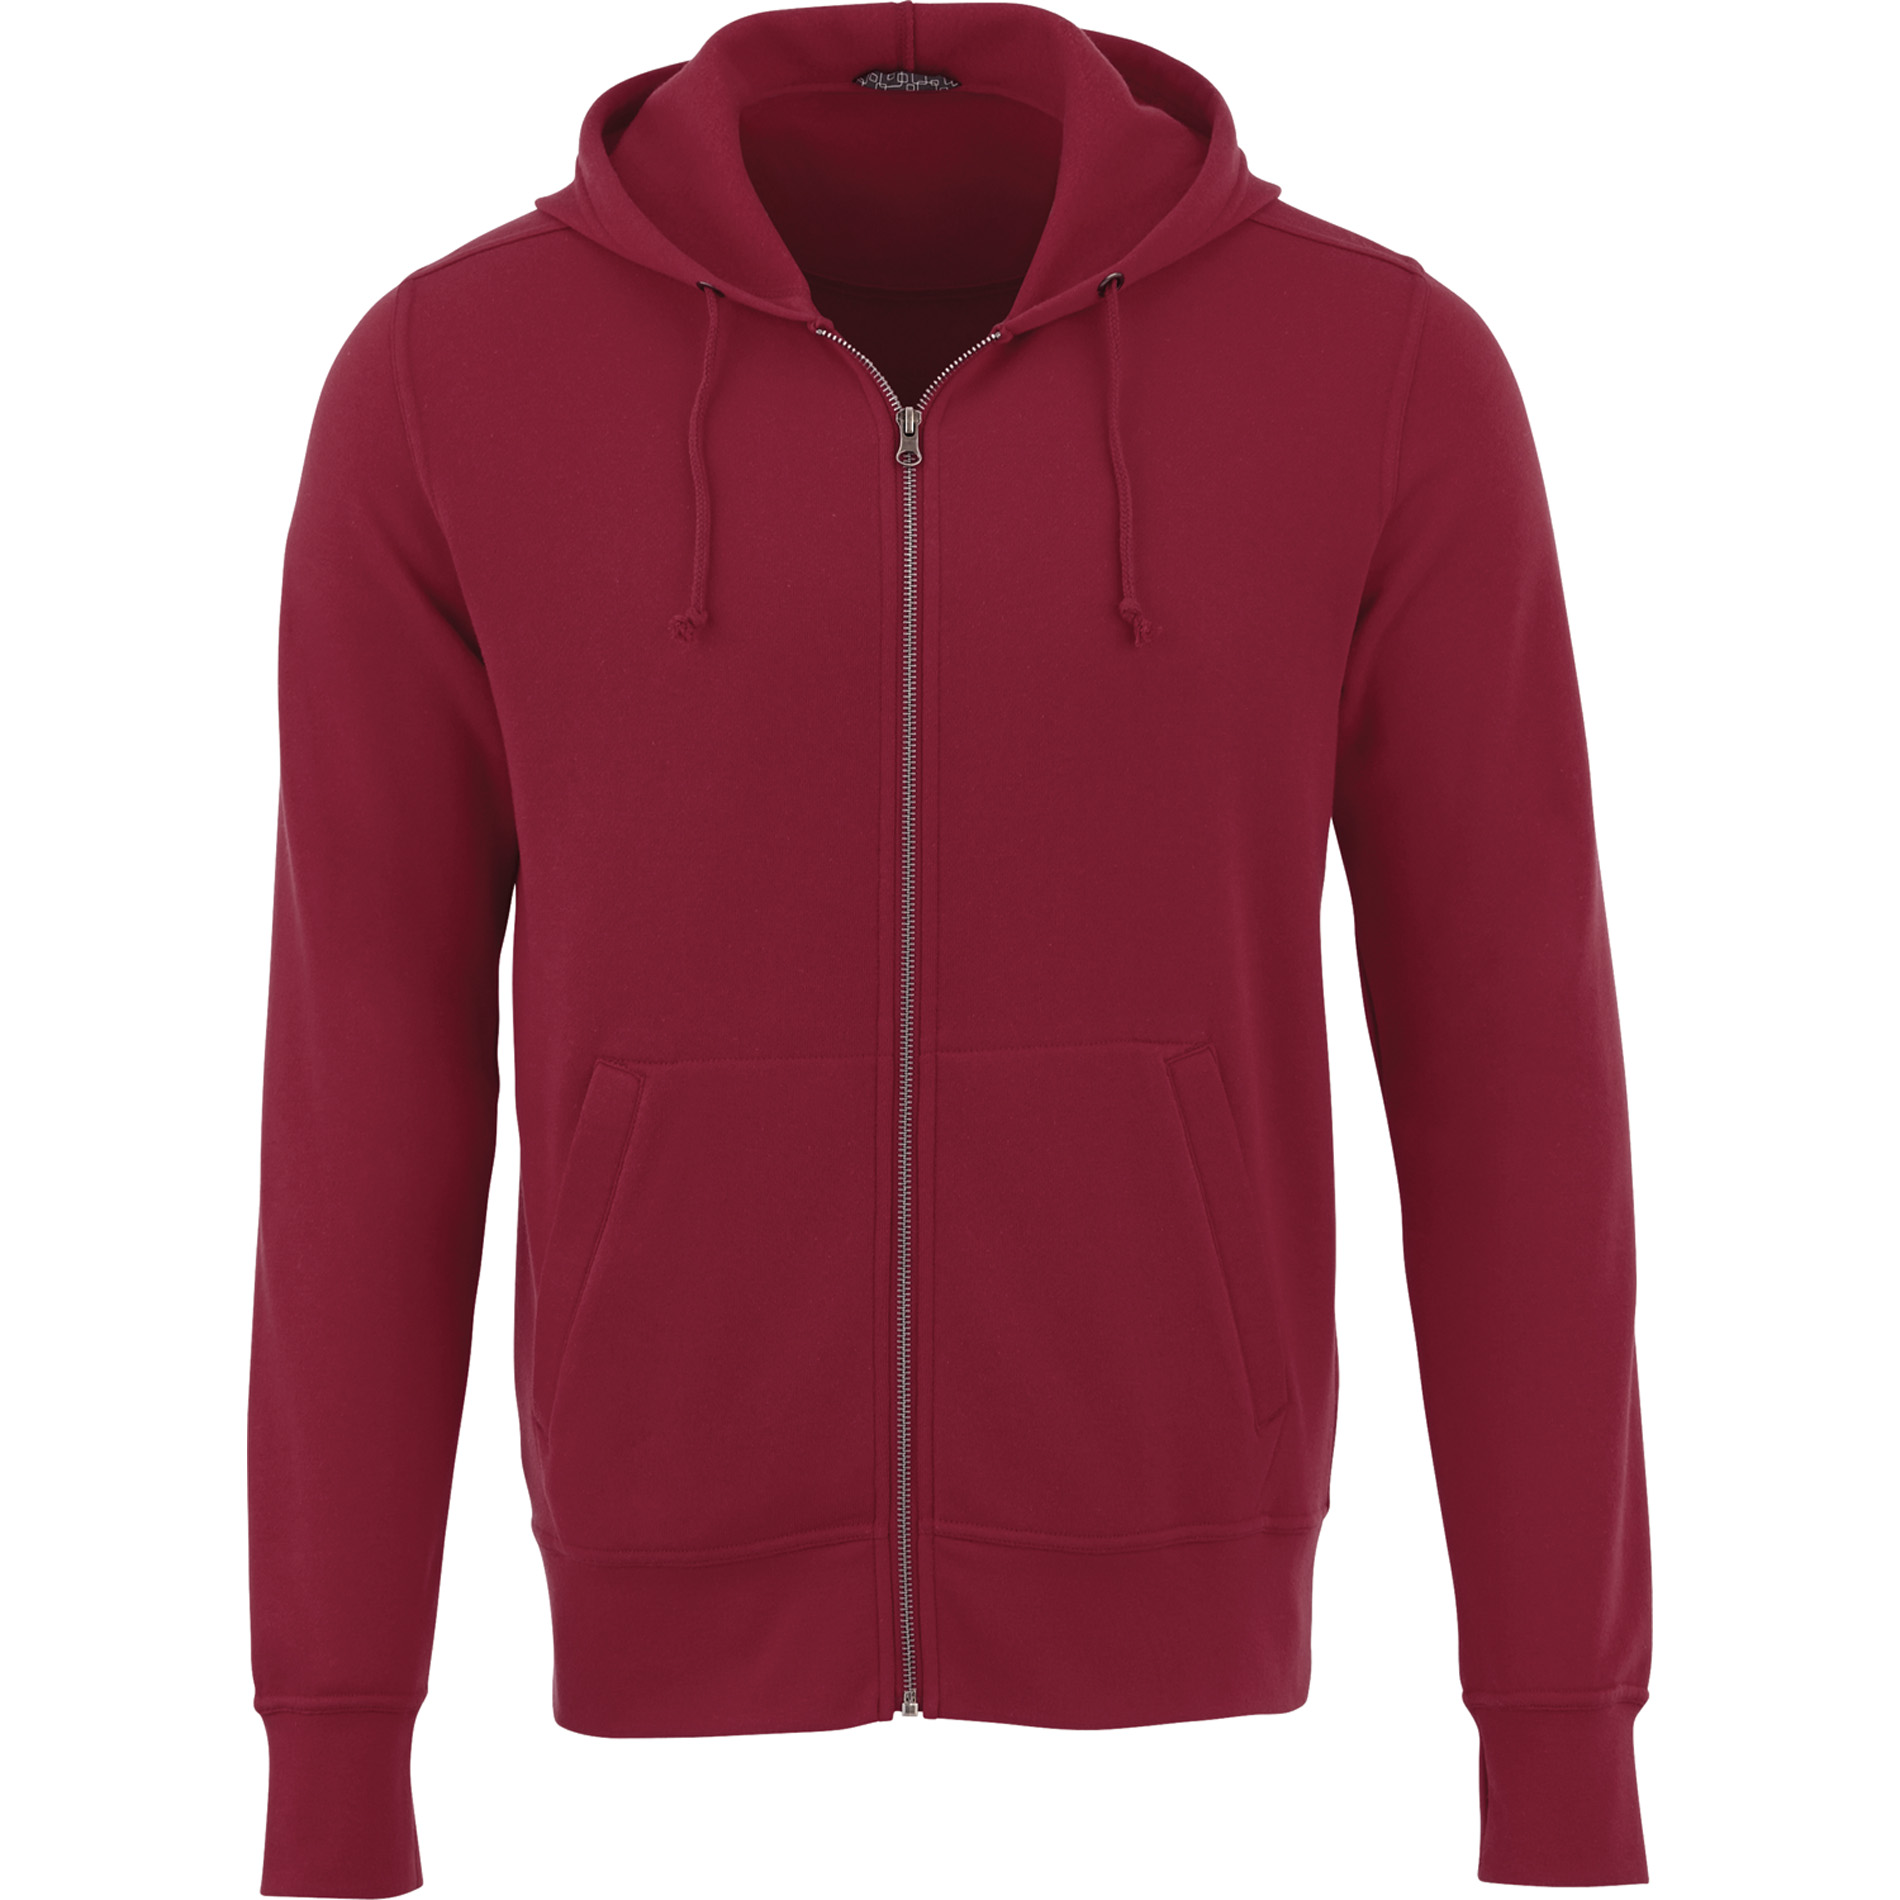 Trimark TM18135 - Men's CYPRESS Fleece Zip Hoodie $22.57 - Sweatshirts